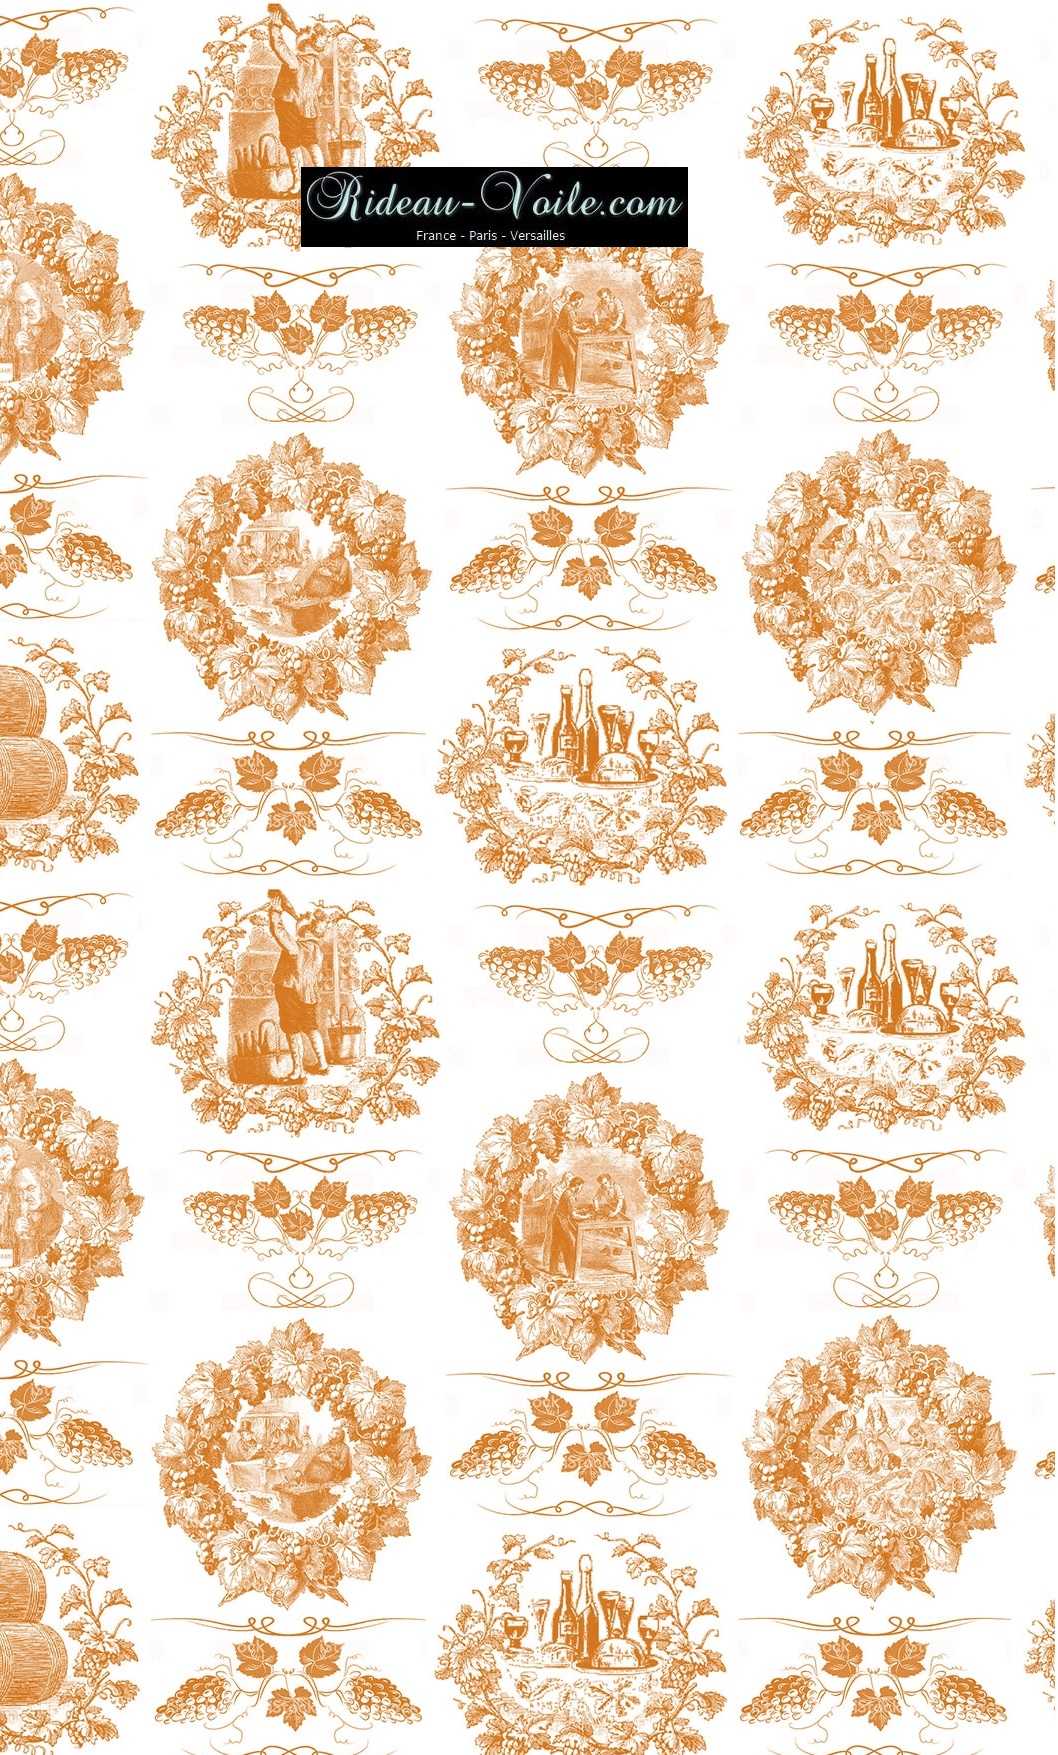 Toile de Jouy Empire style orange tissu au mètre ameublement décoration motifs toile de jouy authentique imprimé grappes de raisin vigne vin Grand cru classé millésime Paris Versailles design fleuri floral tapisserie luxe Monaco Nice fabrics pattern french tapestry orange